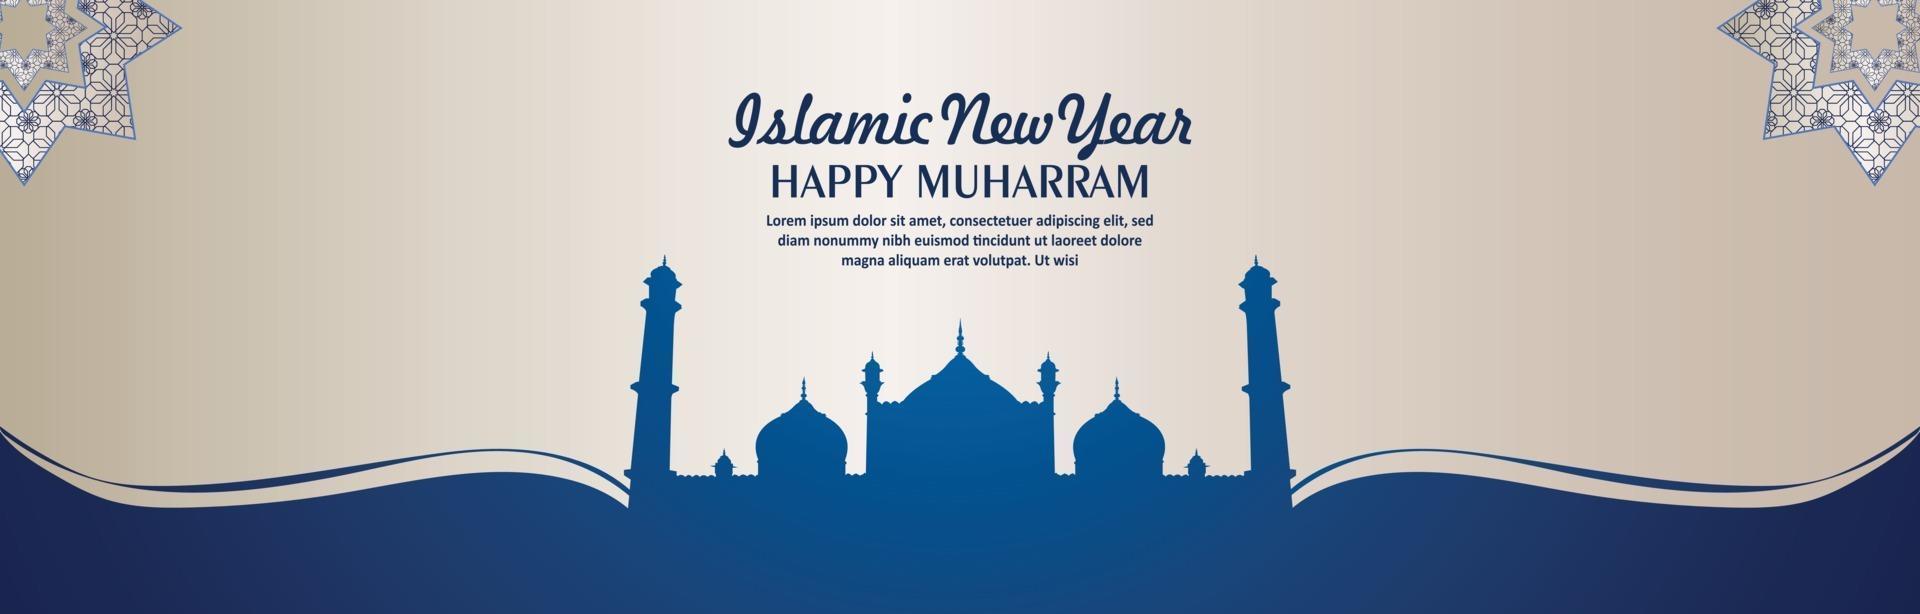 feliz año nuevo islámico muharram banner o encabezado con mezquita plana vector